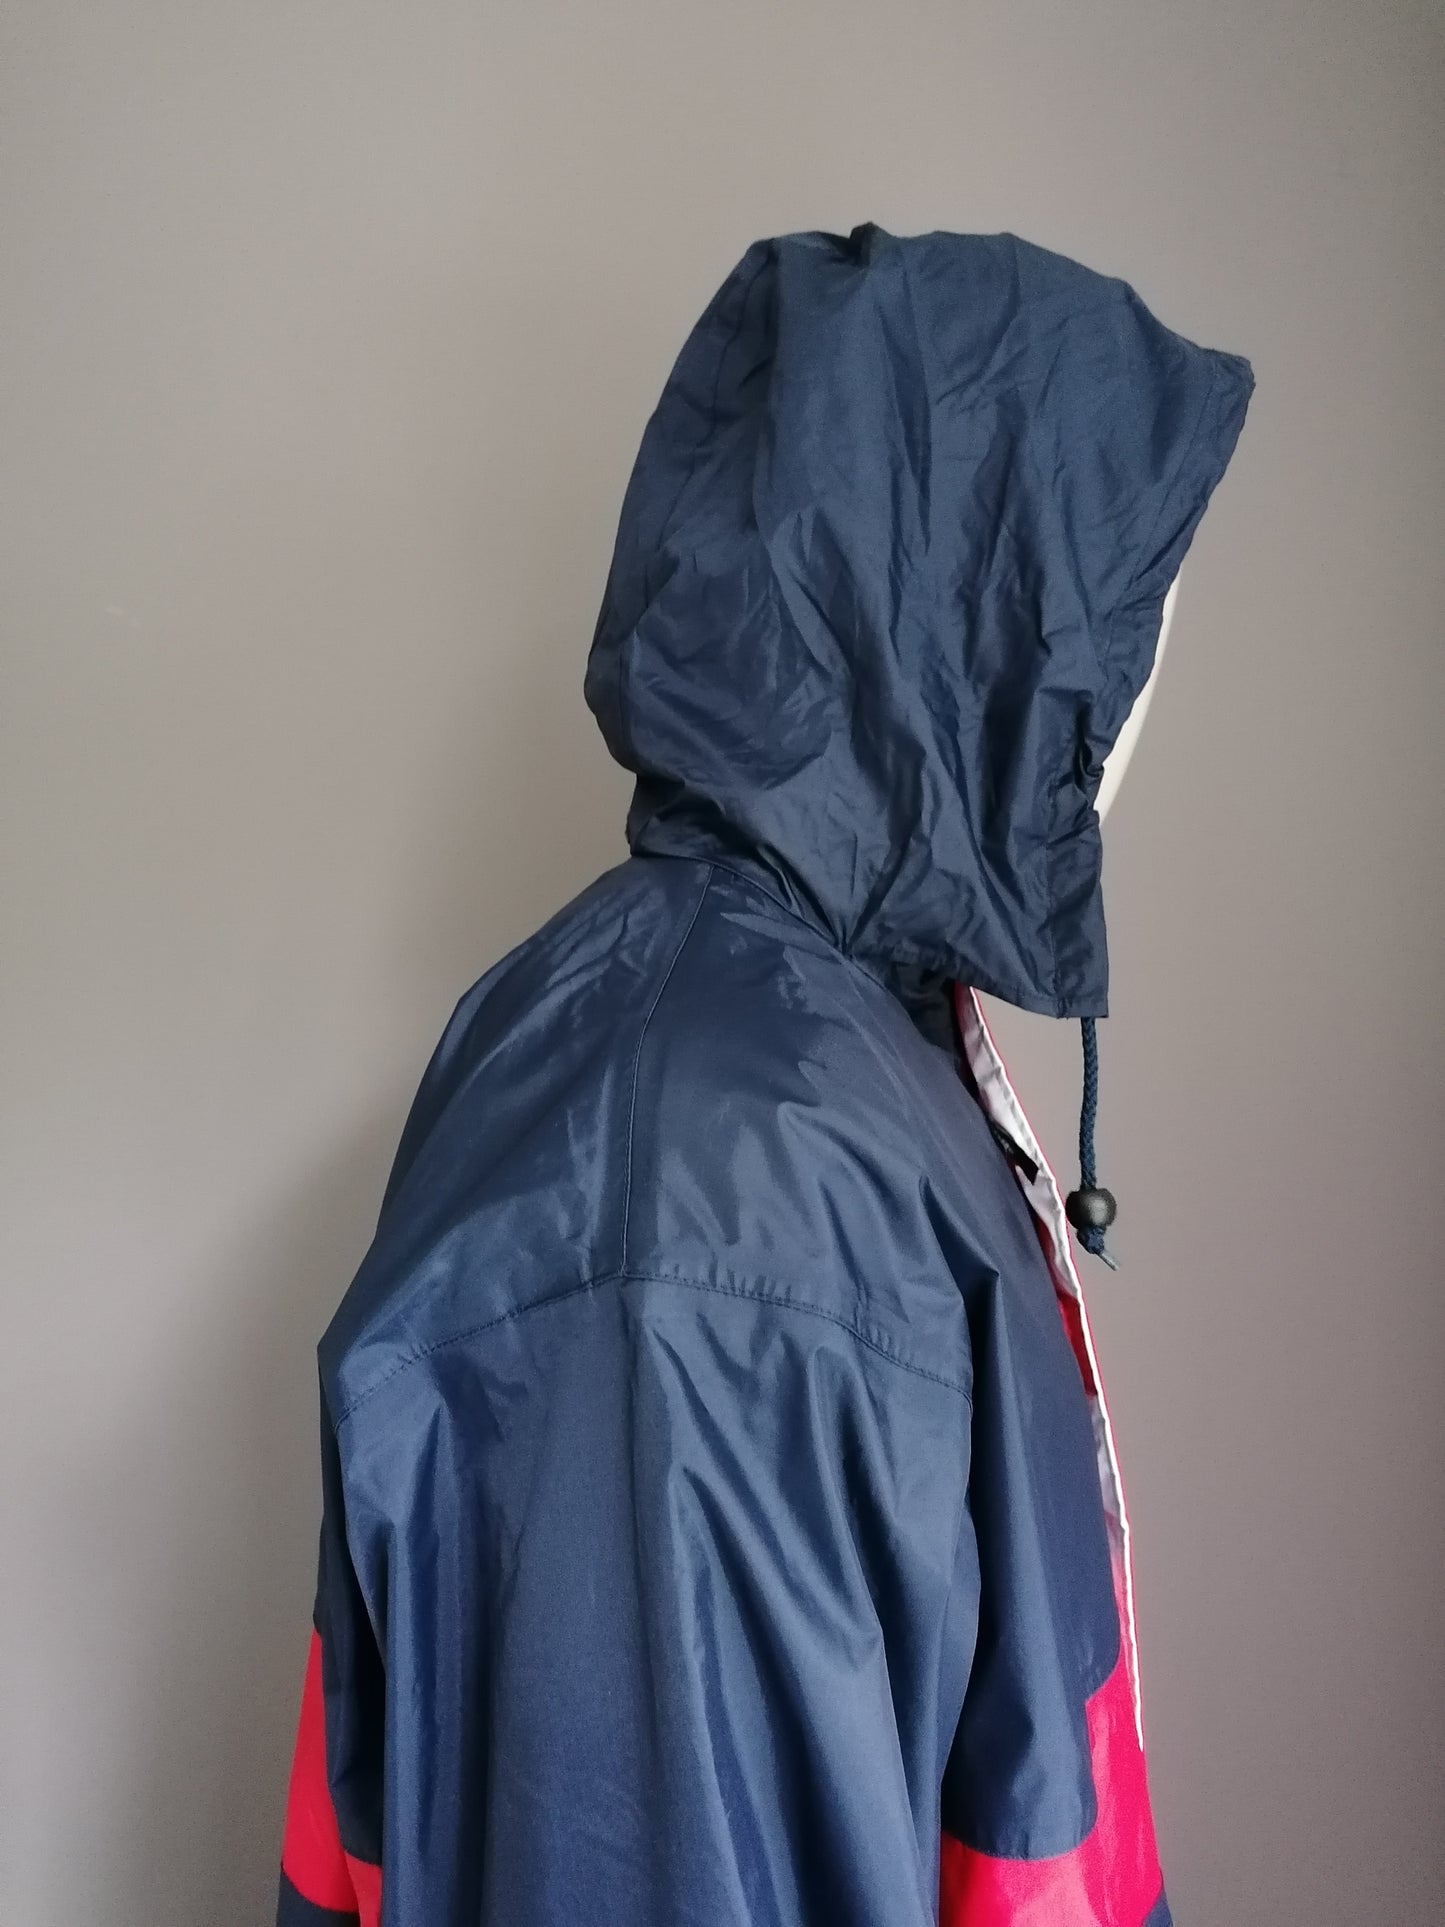 Penn medio longitud entre la chaqueta con capucha. Rojo azul coloreado. Tamaño XL.